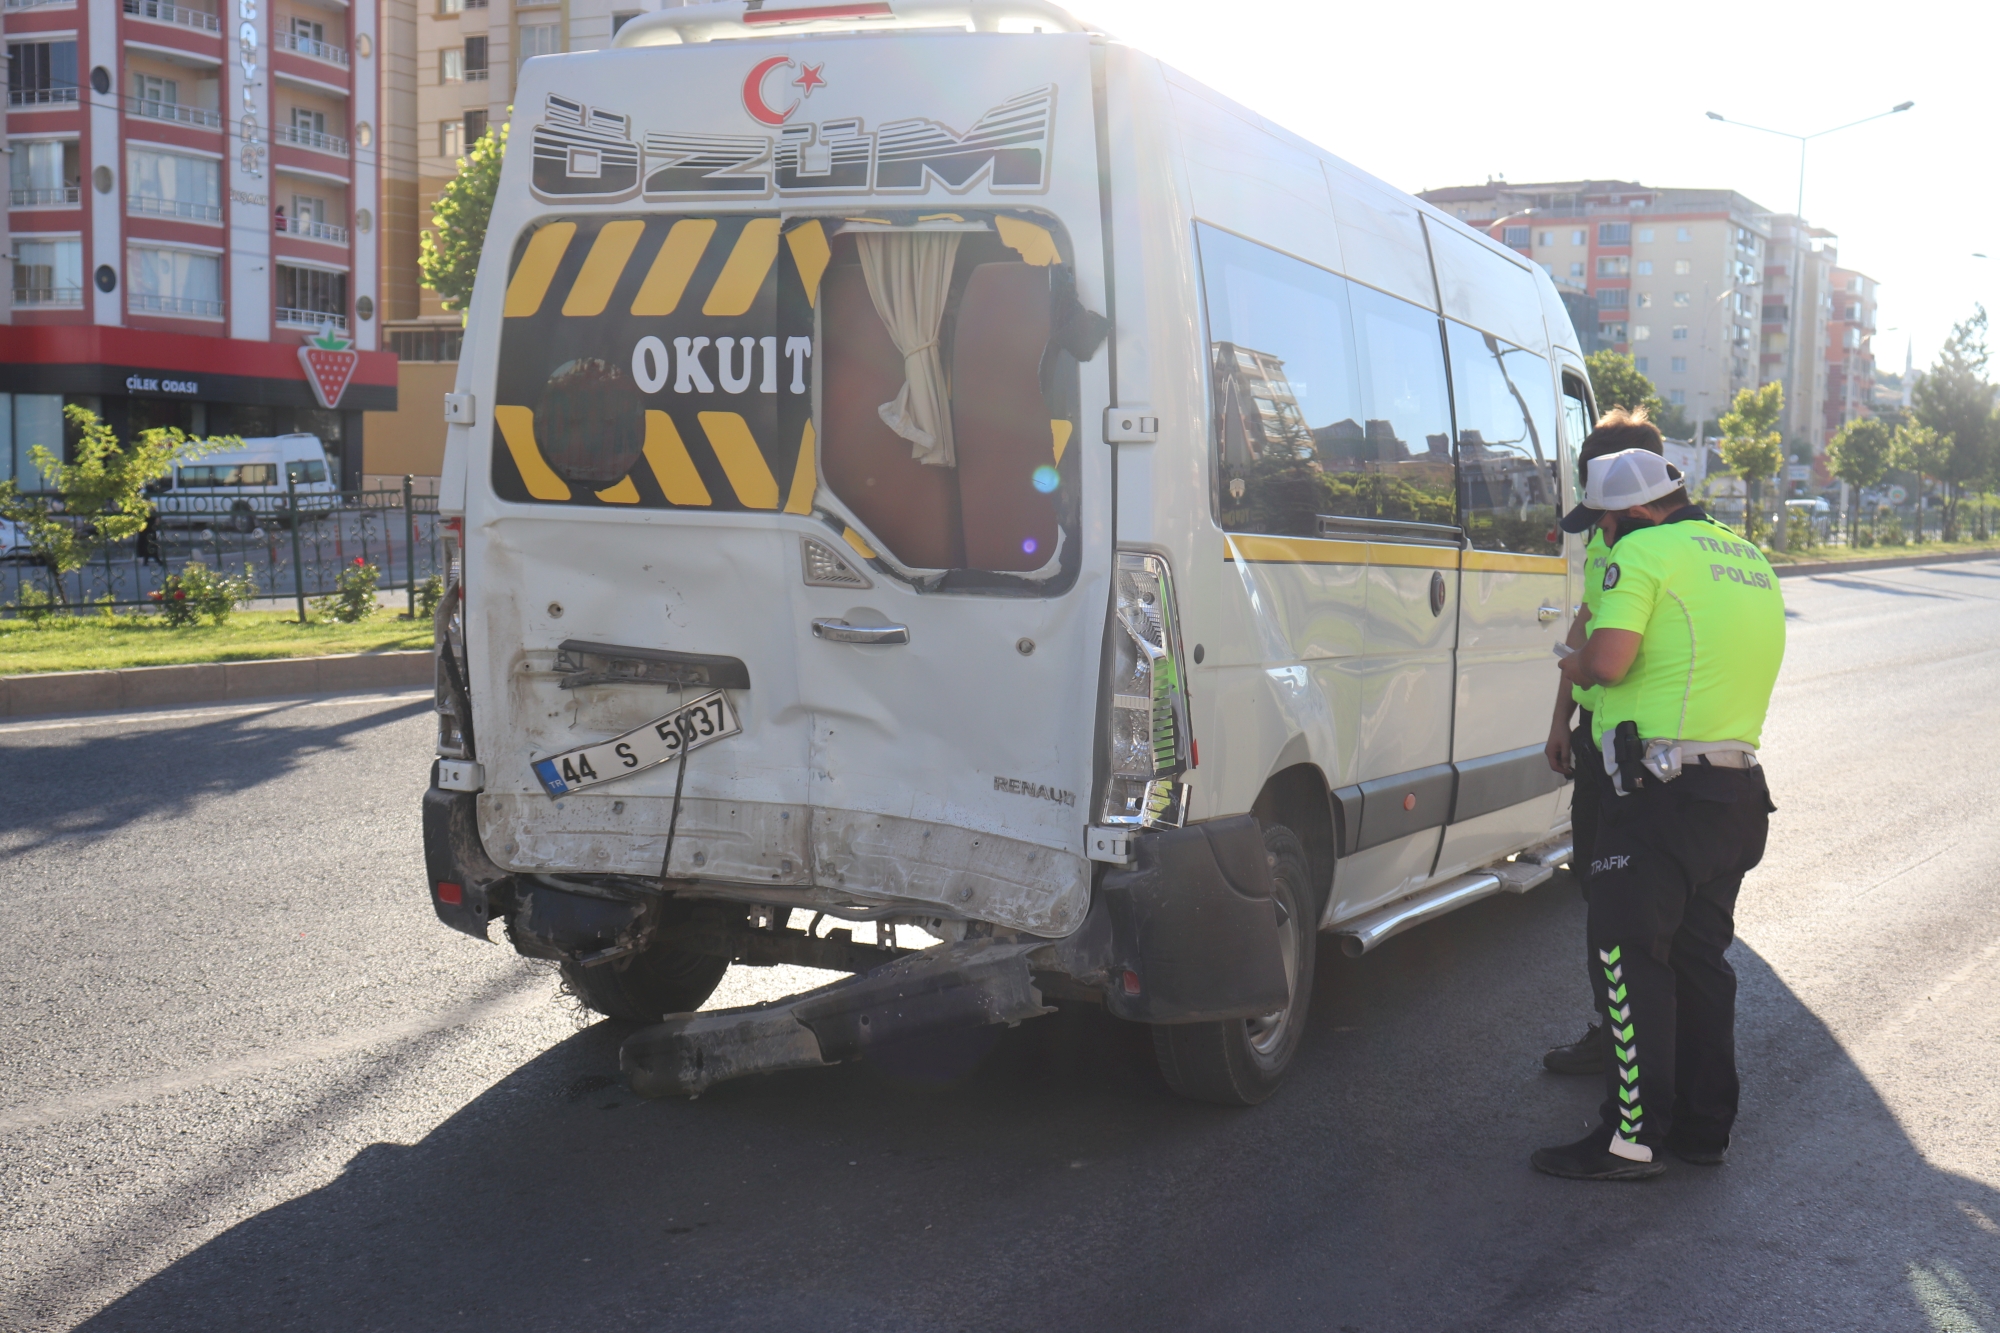 Malatya’da otomobilin aynı istikamette seyreden minibüse arkadan çarpması sonucunda otomobil sürücüsü hayatını kaybederken, yanında bulunan 1 kişi ise yaralandı.